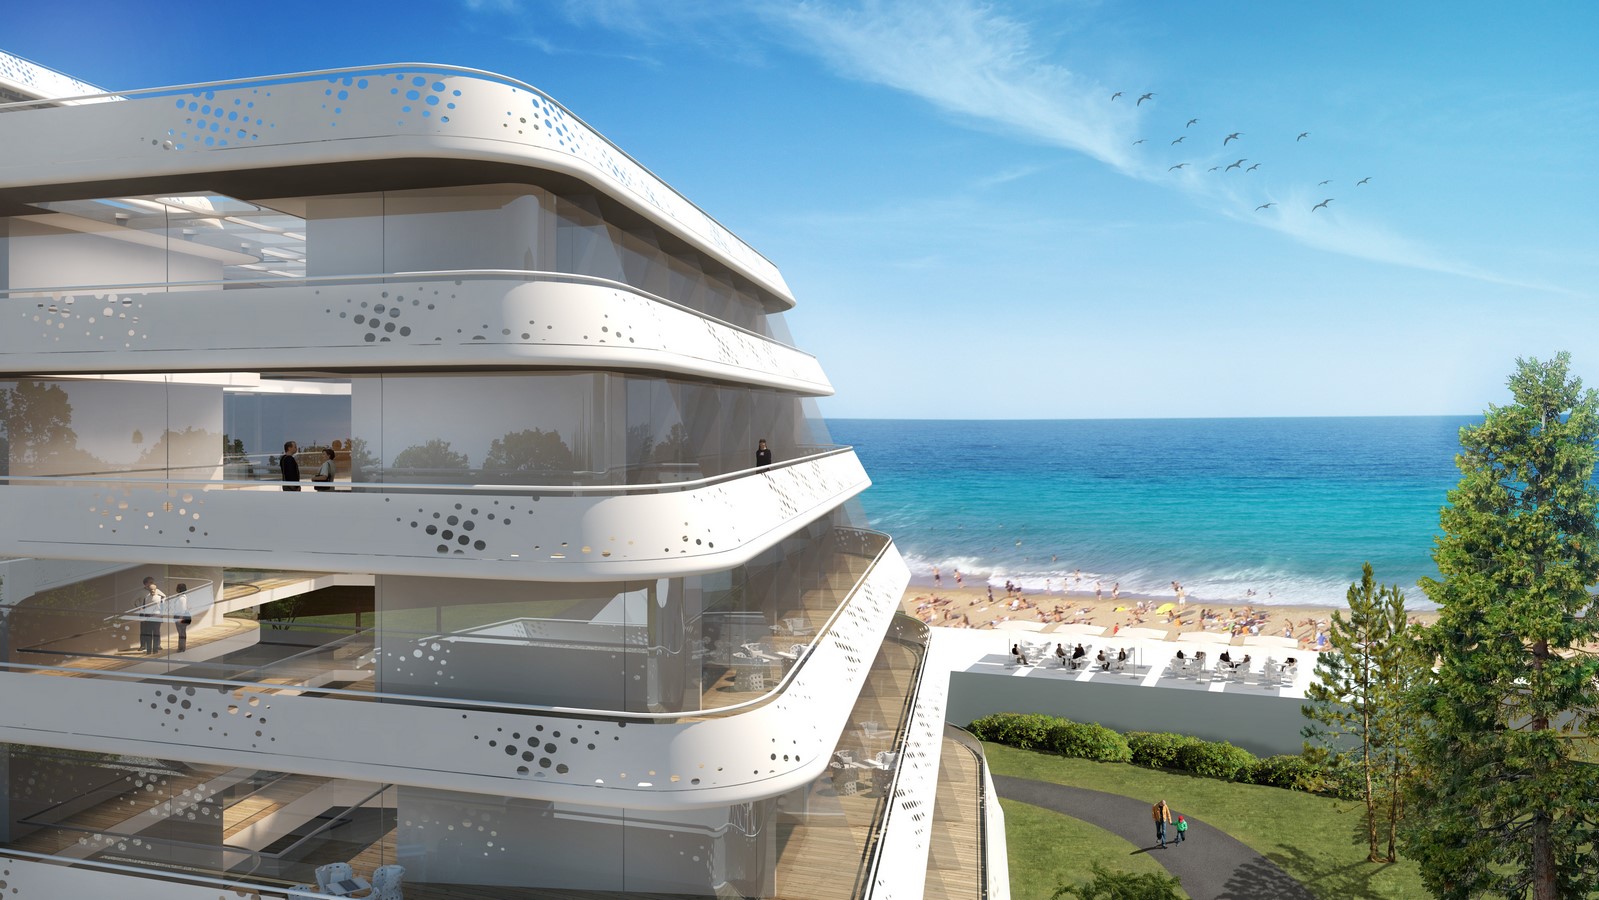 Baltic Beach Hotel by Söhne & Partner Architekten - Sheet5